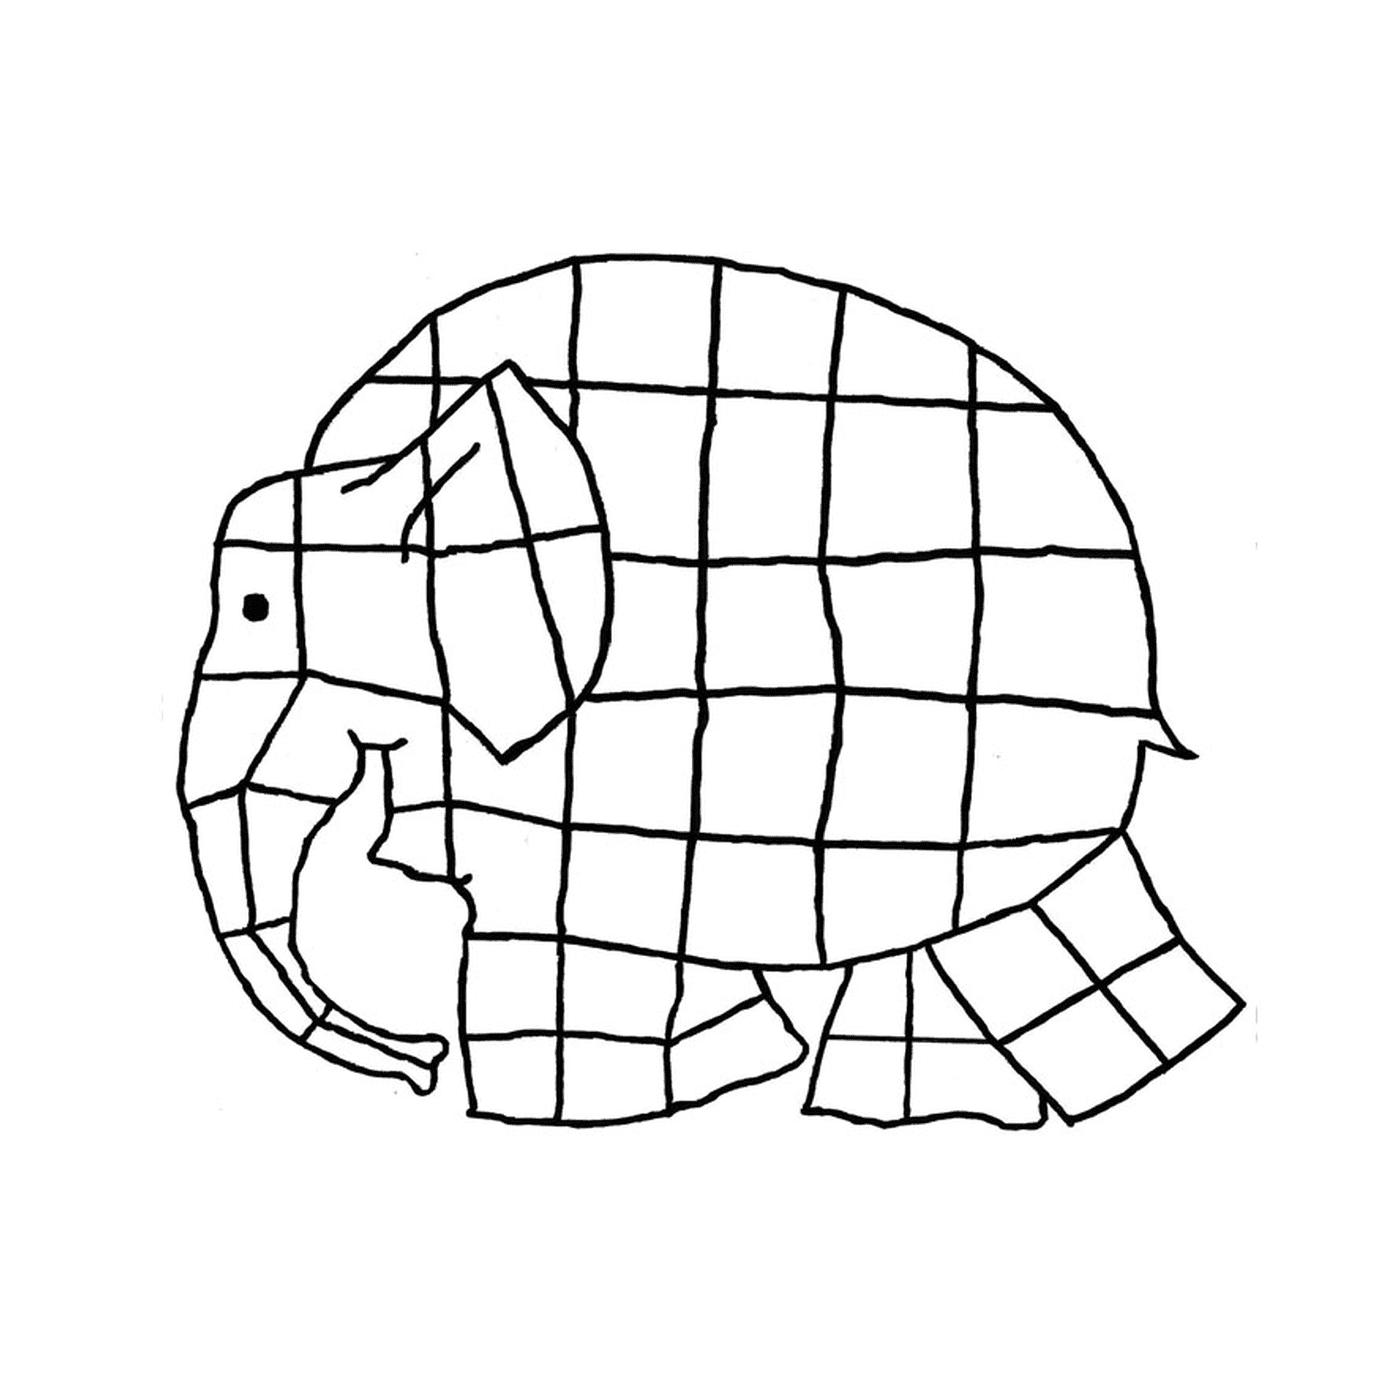  Un elefante hecho de cuadrados 